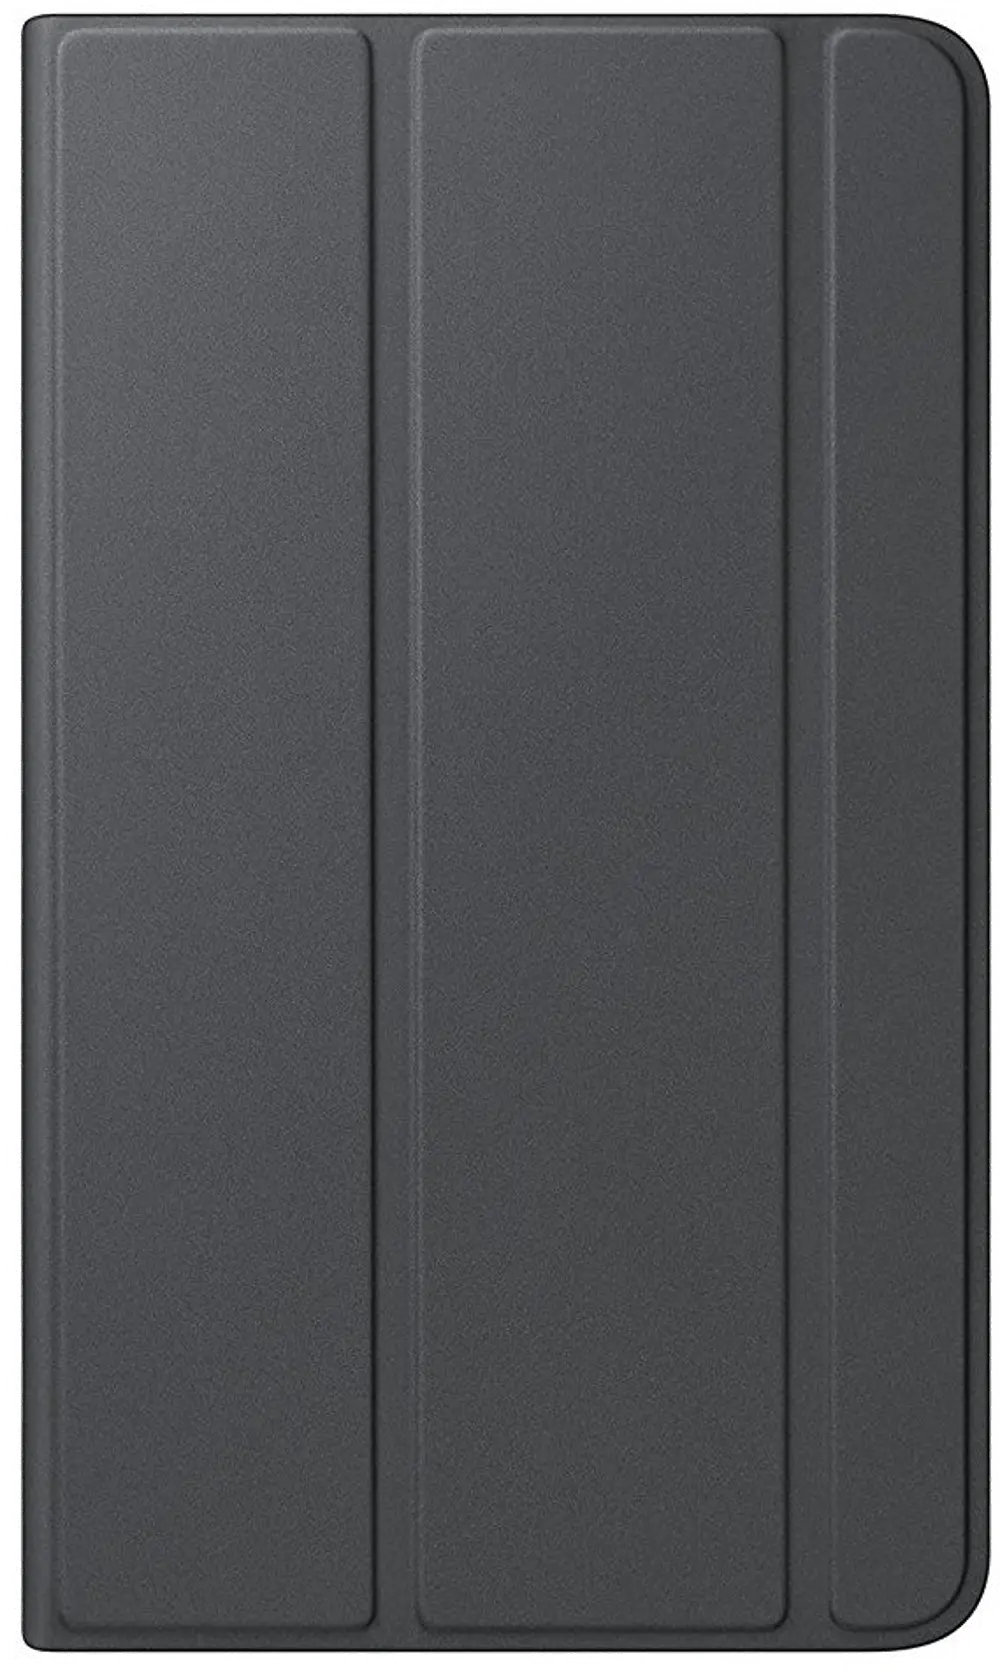 EF-BT280PBEGUJ Samsung Galaxy Tab A 7.0 Book Cover - Black-1